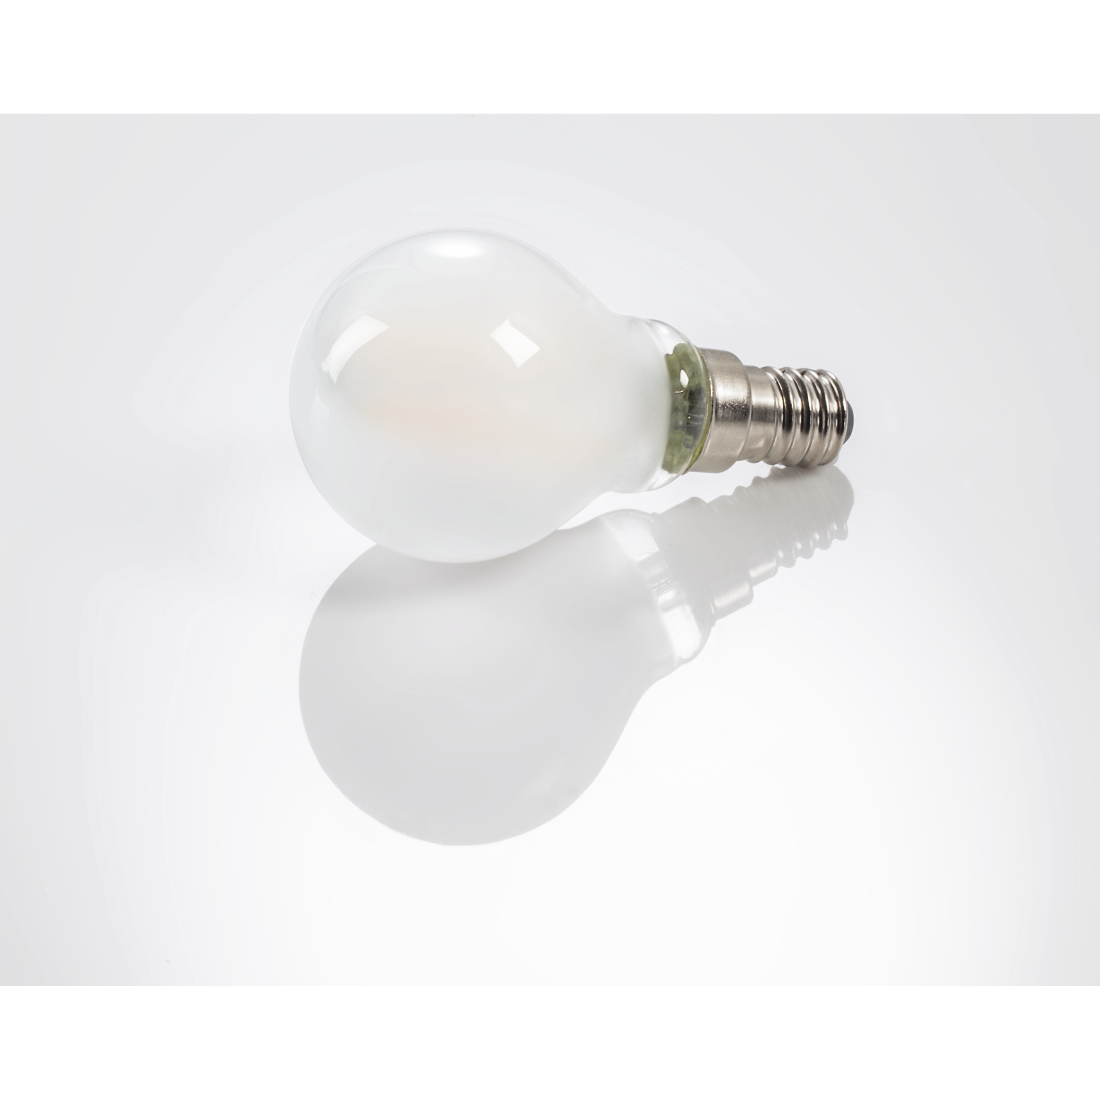 abx3 High-Res Image 3 - Xavax, Ampoule filament à LED, E14, 250lm rempl. amp. sphérique 25W, blc chd